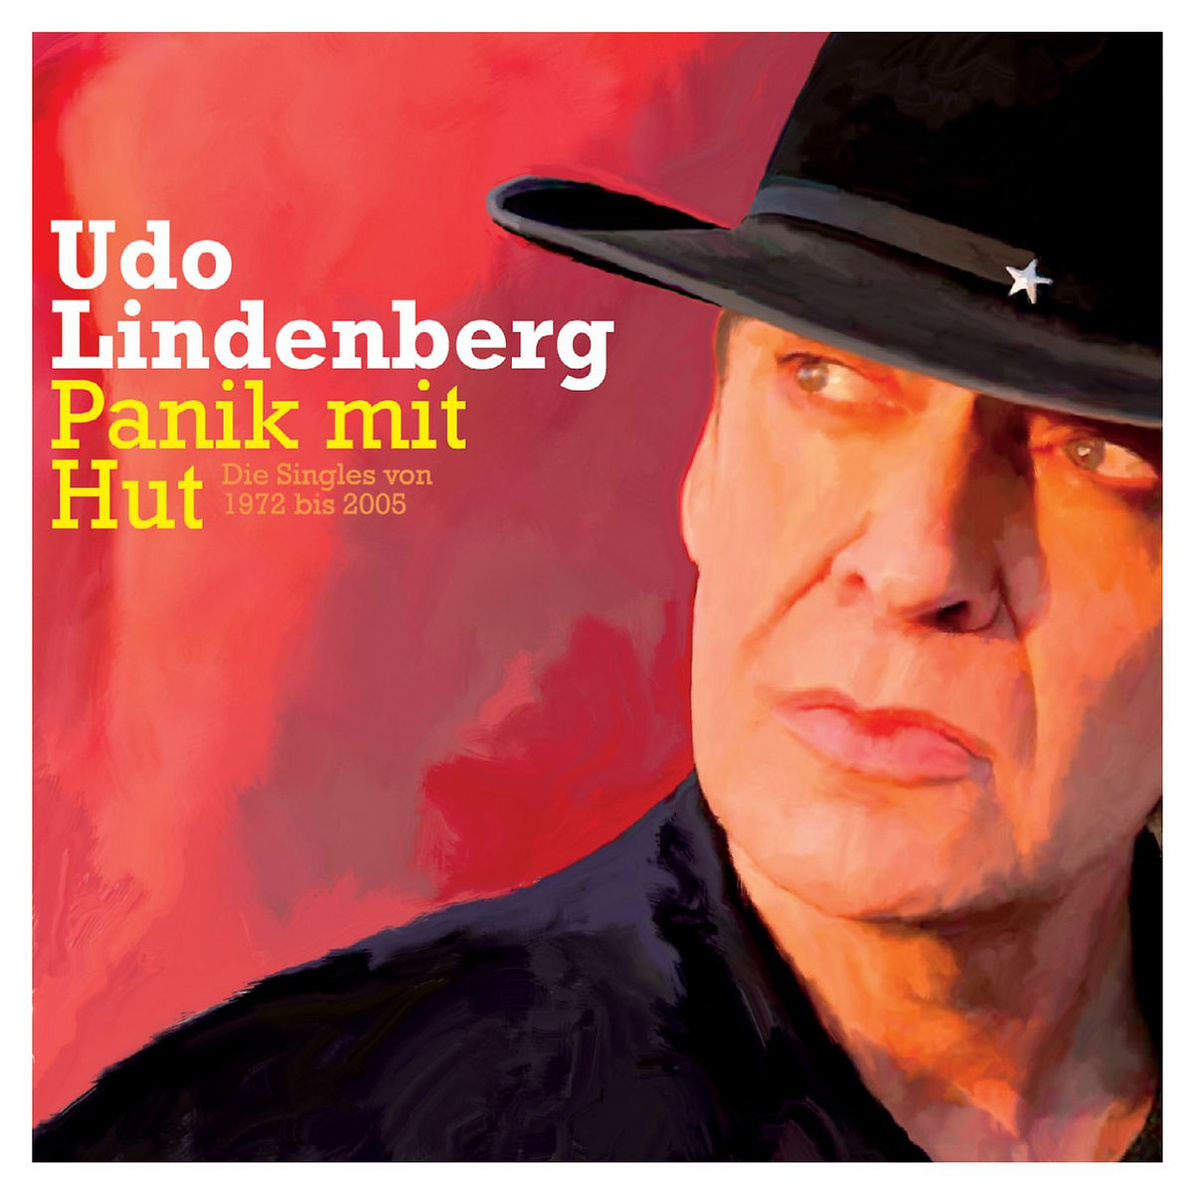 Udo lindenberg singles